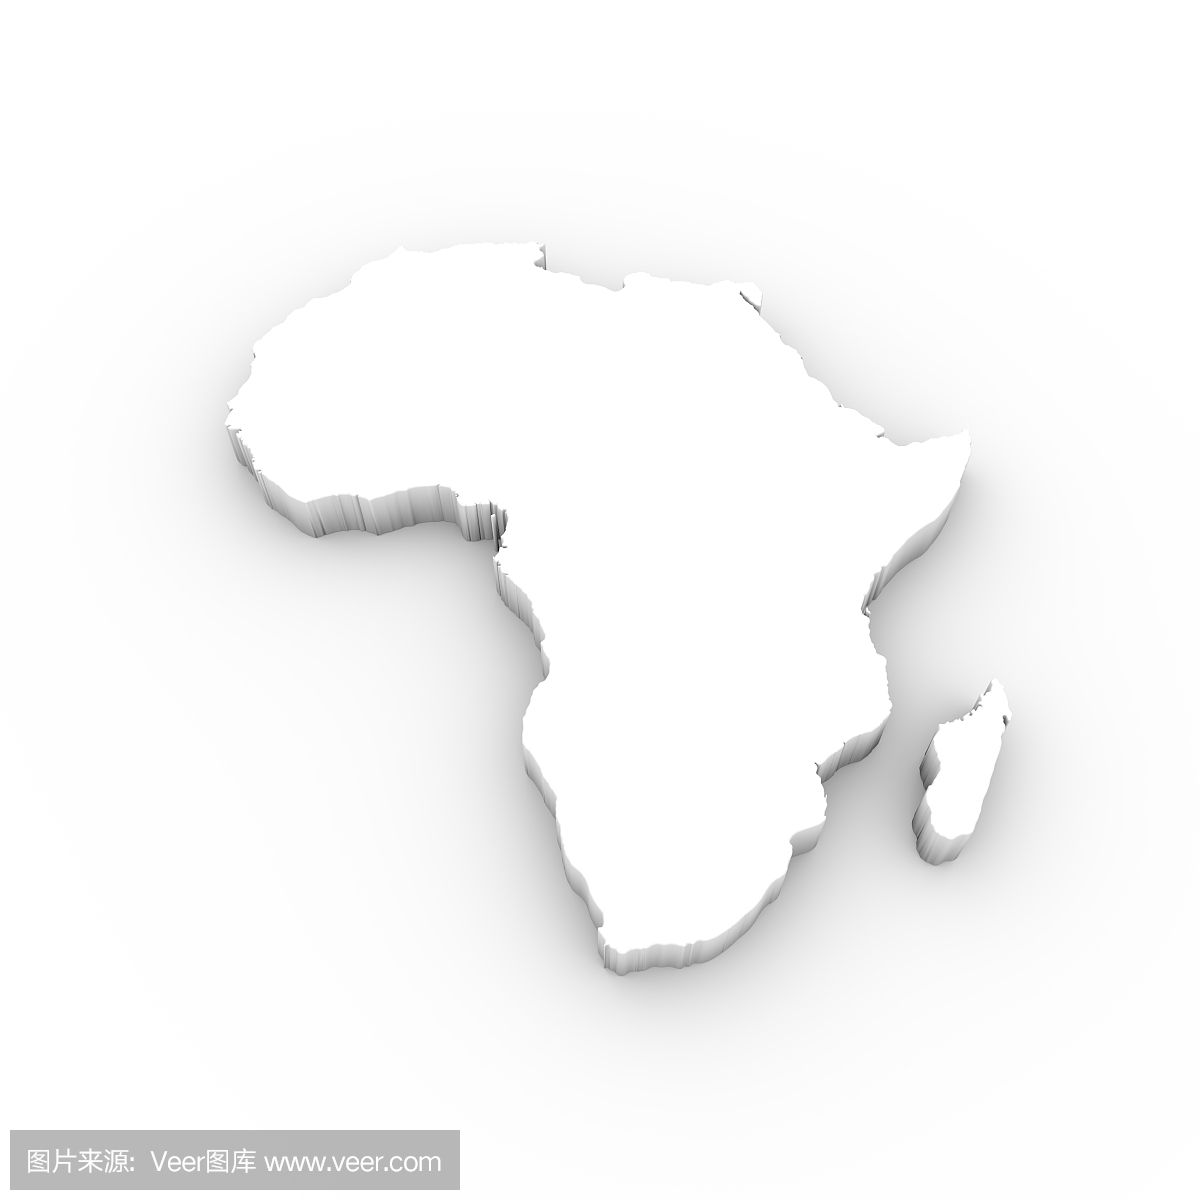 非洲地图3D在白色包括剪切路径